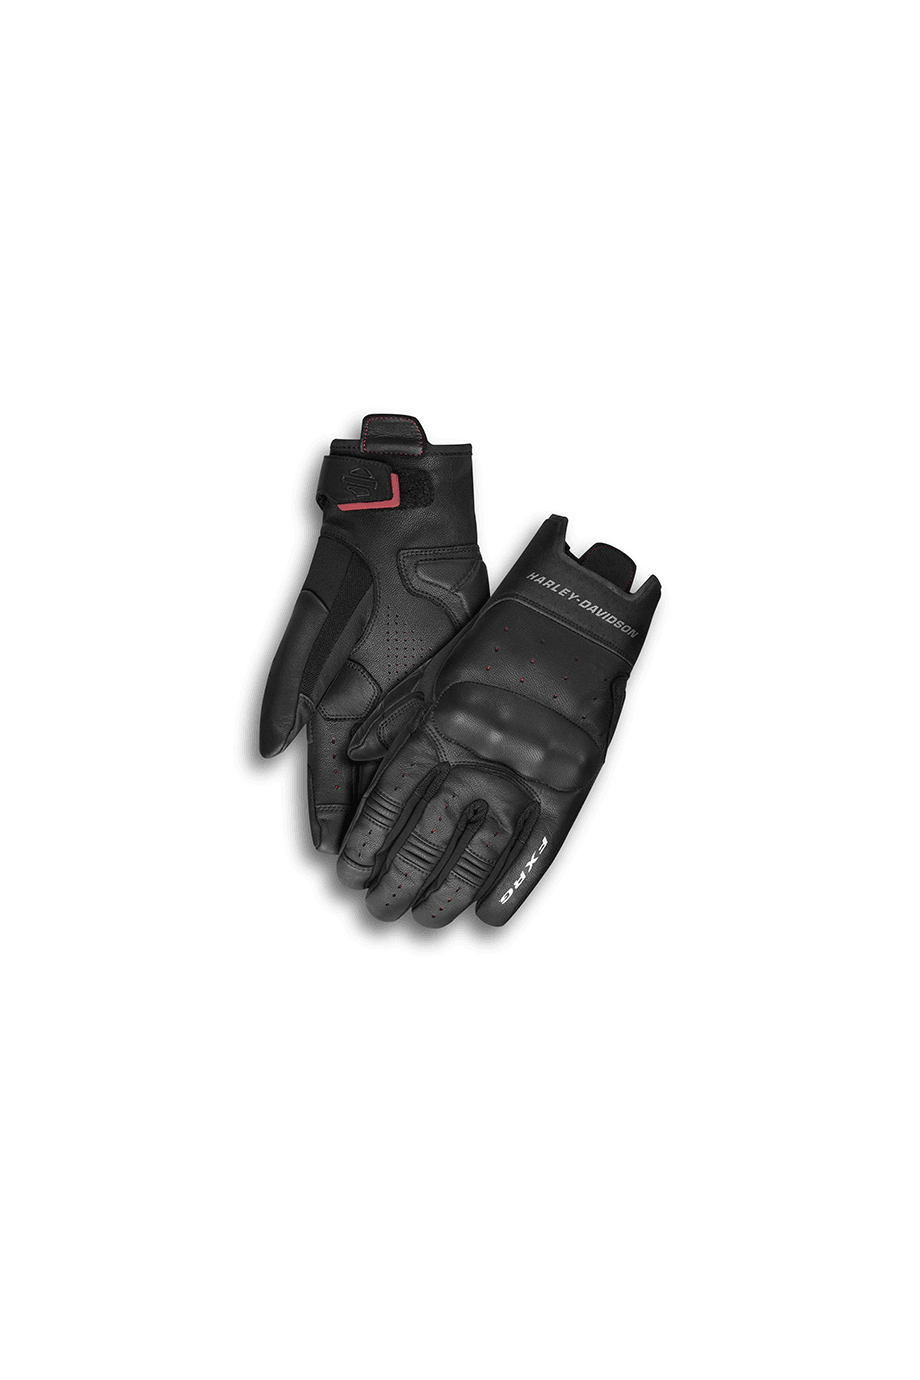 Harley-Davidson® Men's Fxrg Lightweight Gloves